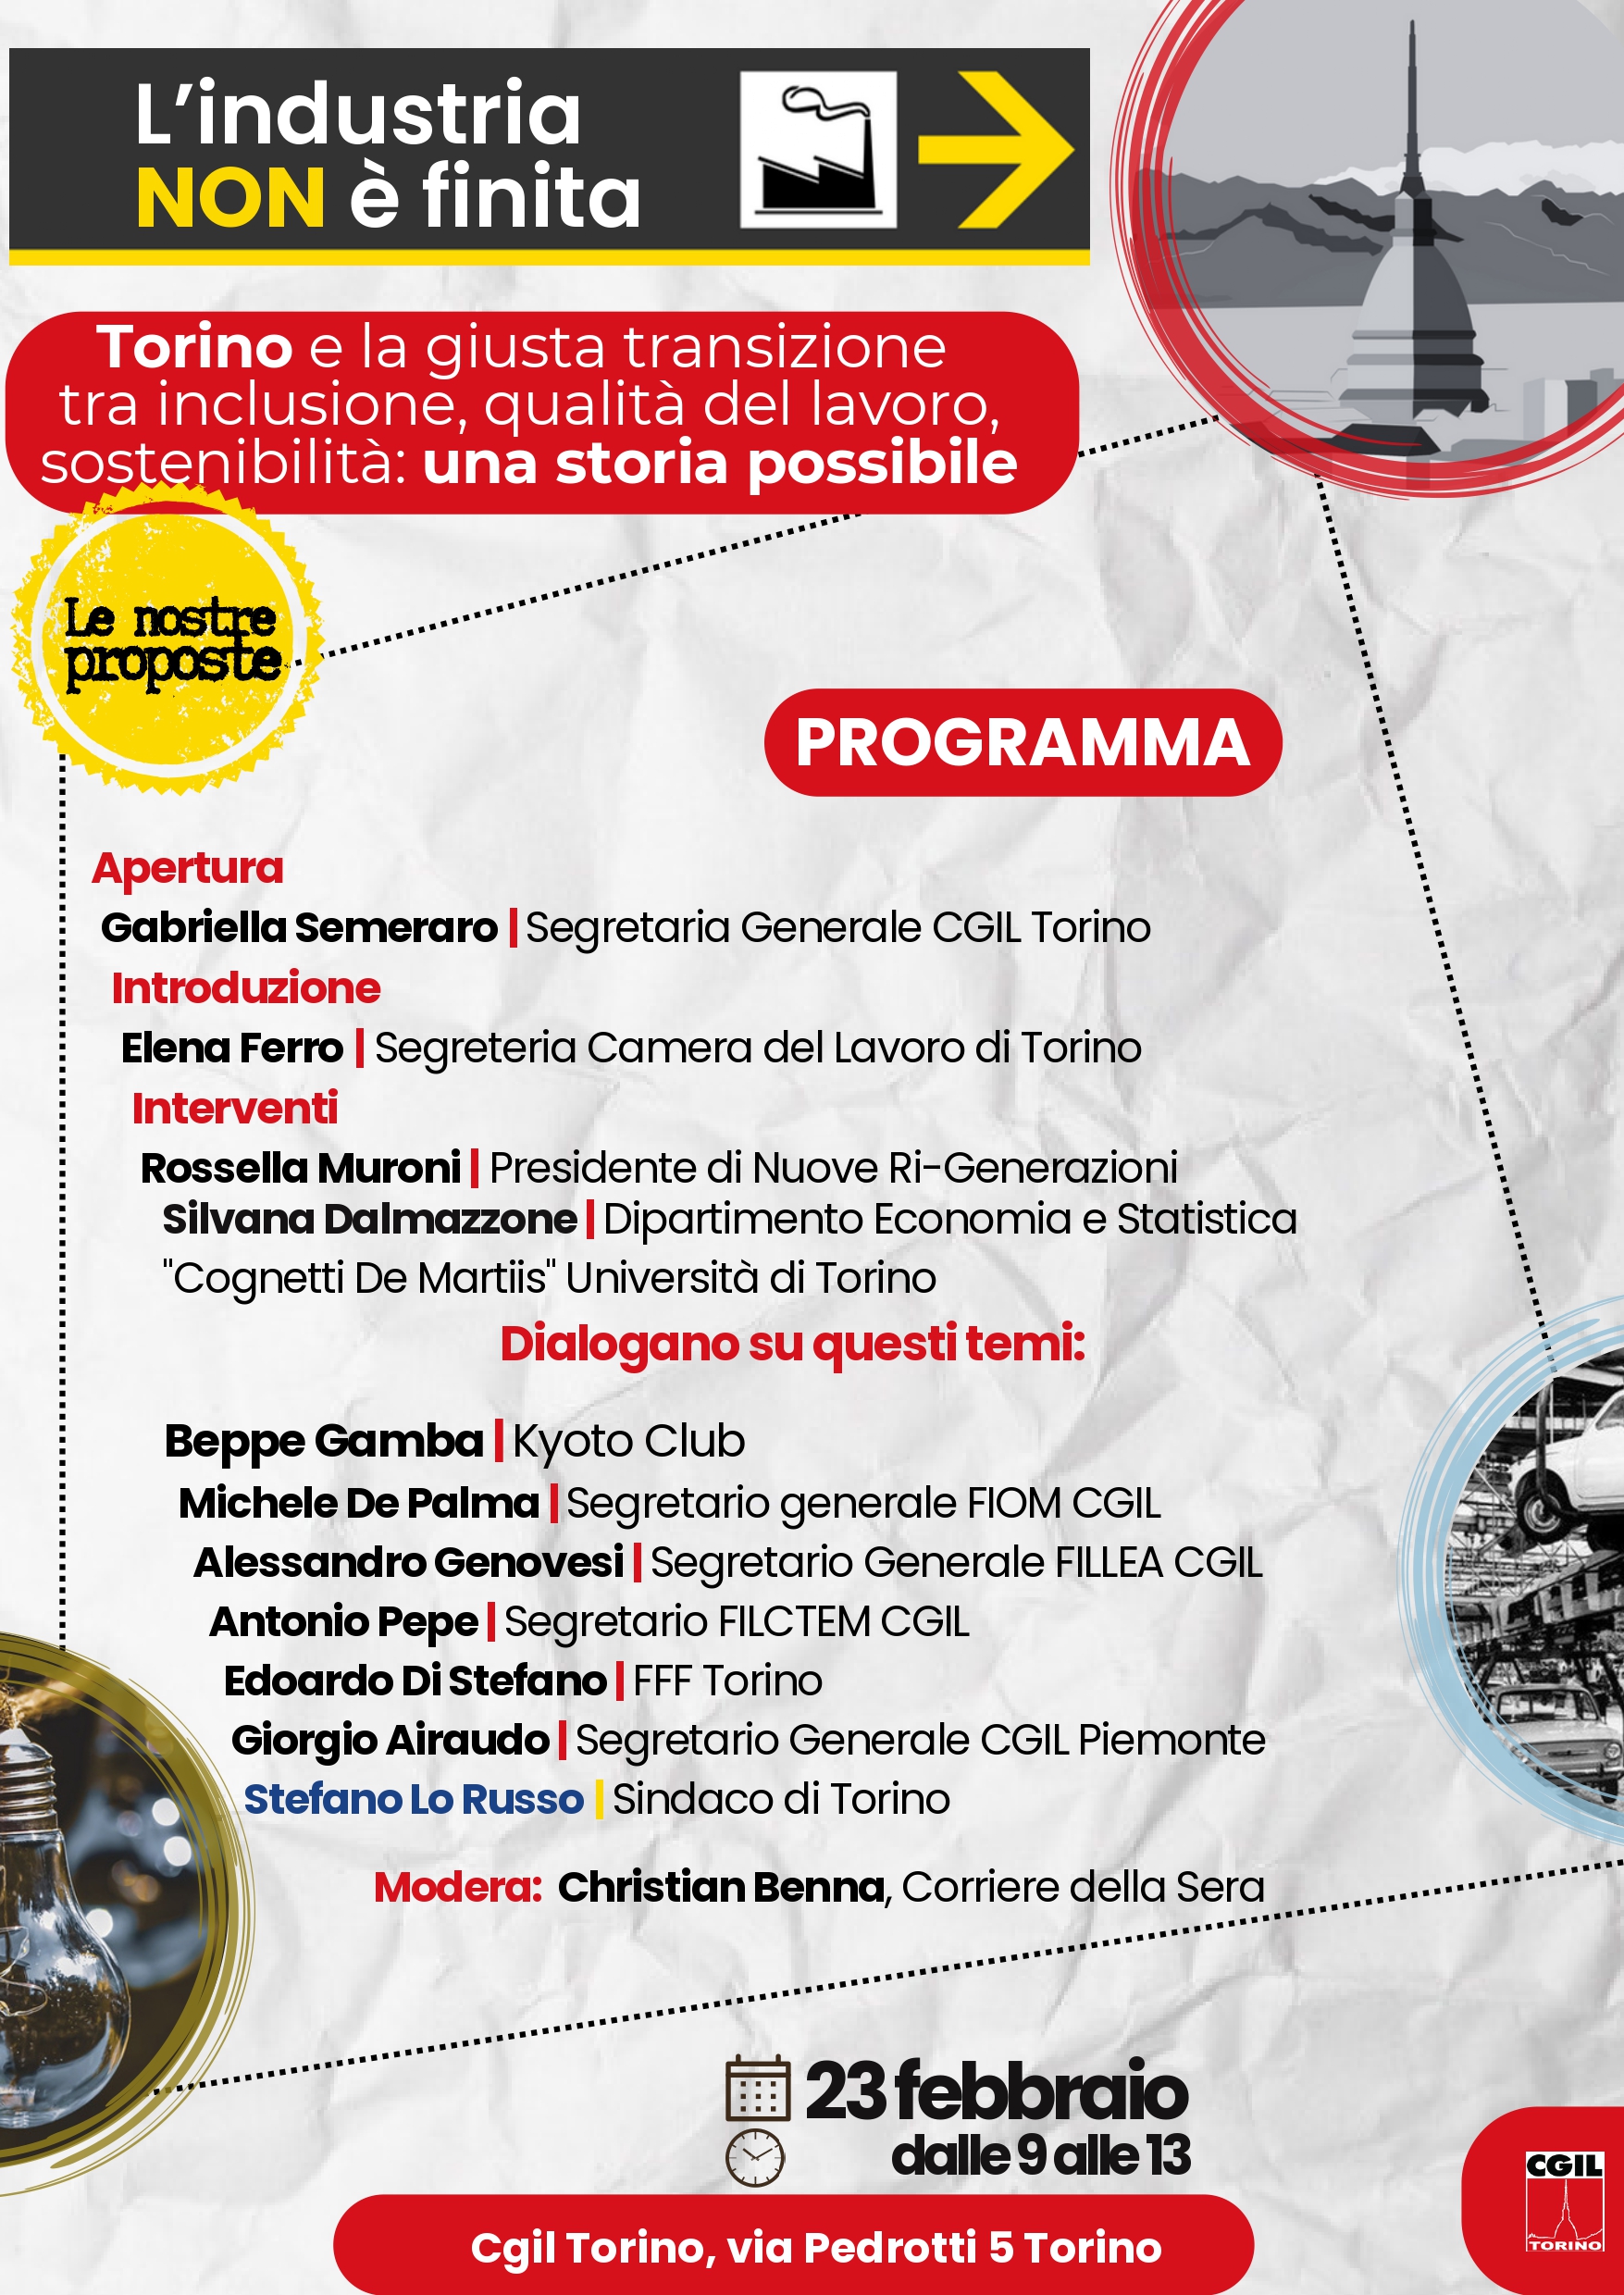 "L'industria non è finita": il 23/02 un confronto a Torino sulla giusta transizione insieme a enti, associazioni e sindaco Lo Russo